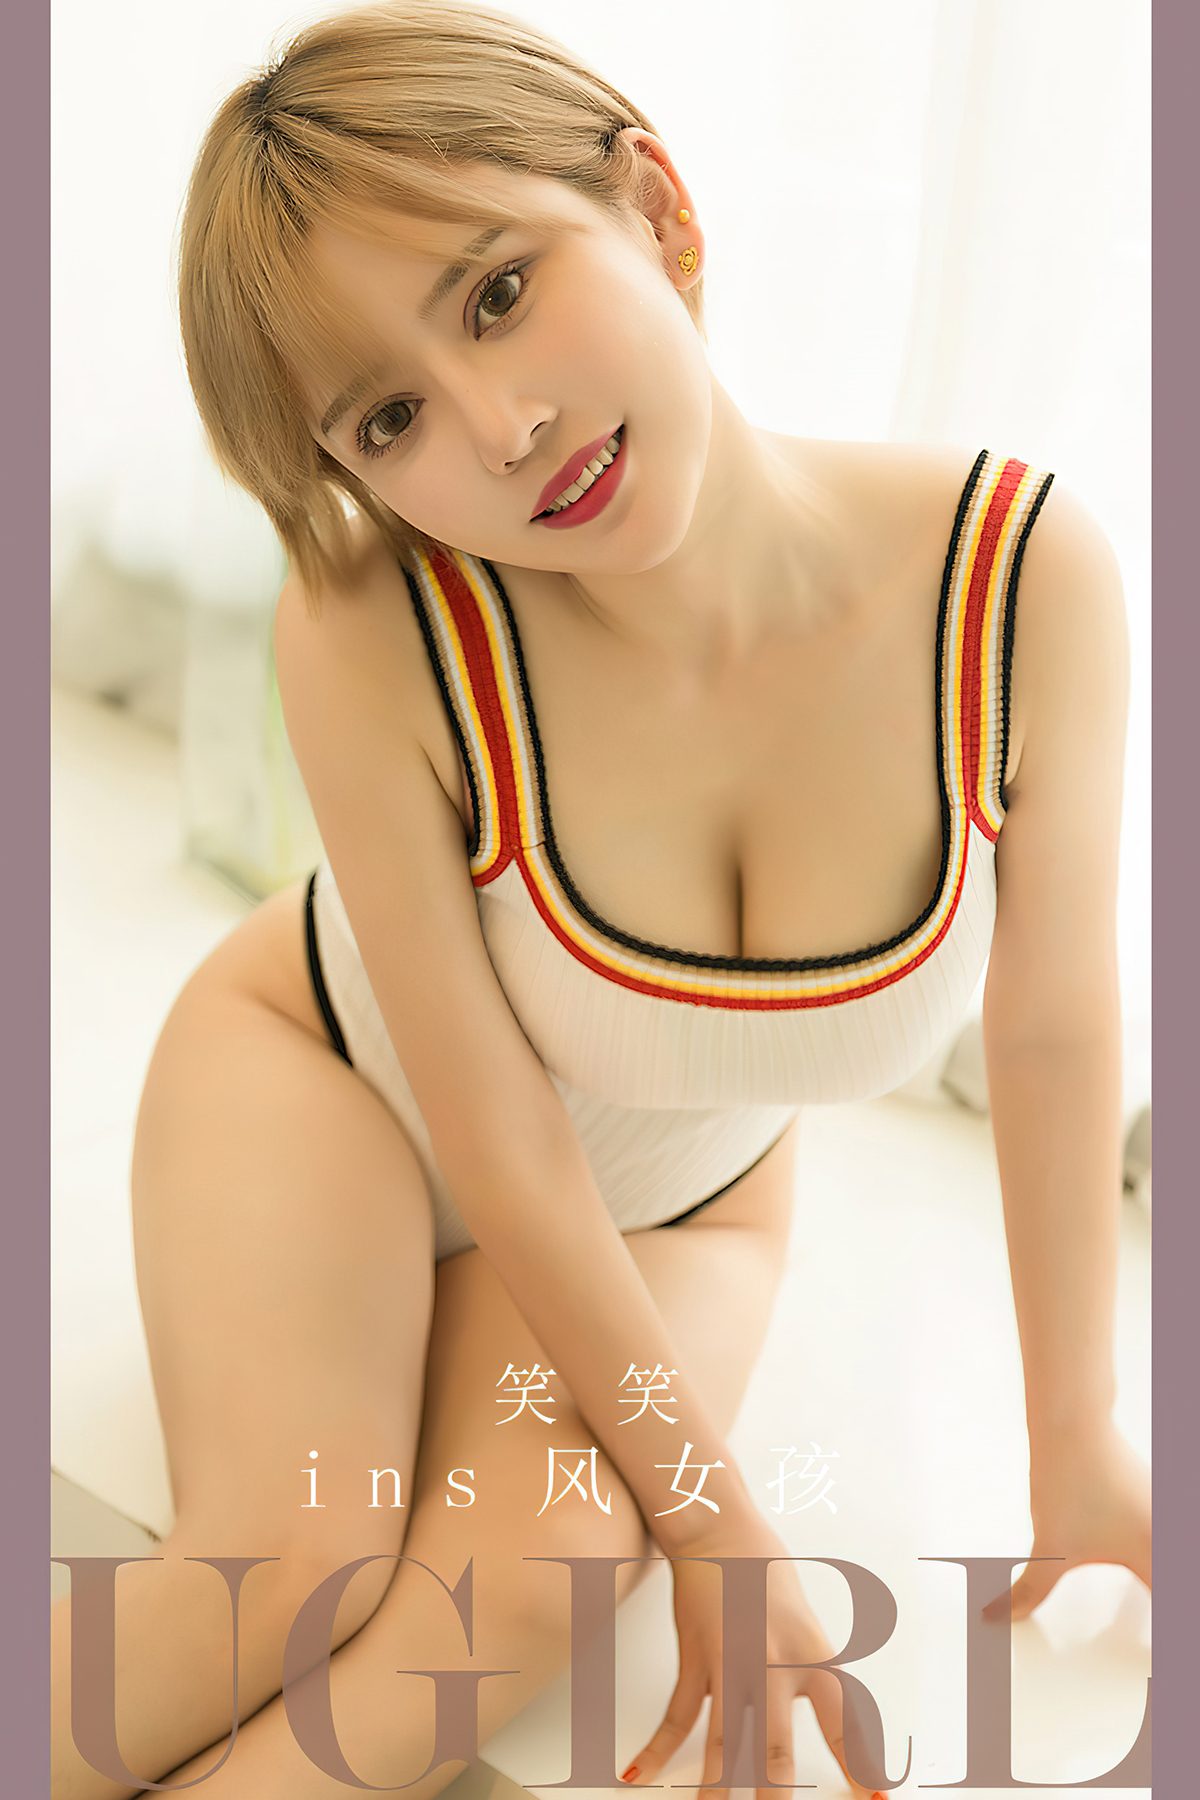 Ugirls App尤果圈 No 2700 Xiao Xiao 0015 1318457094.jpg